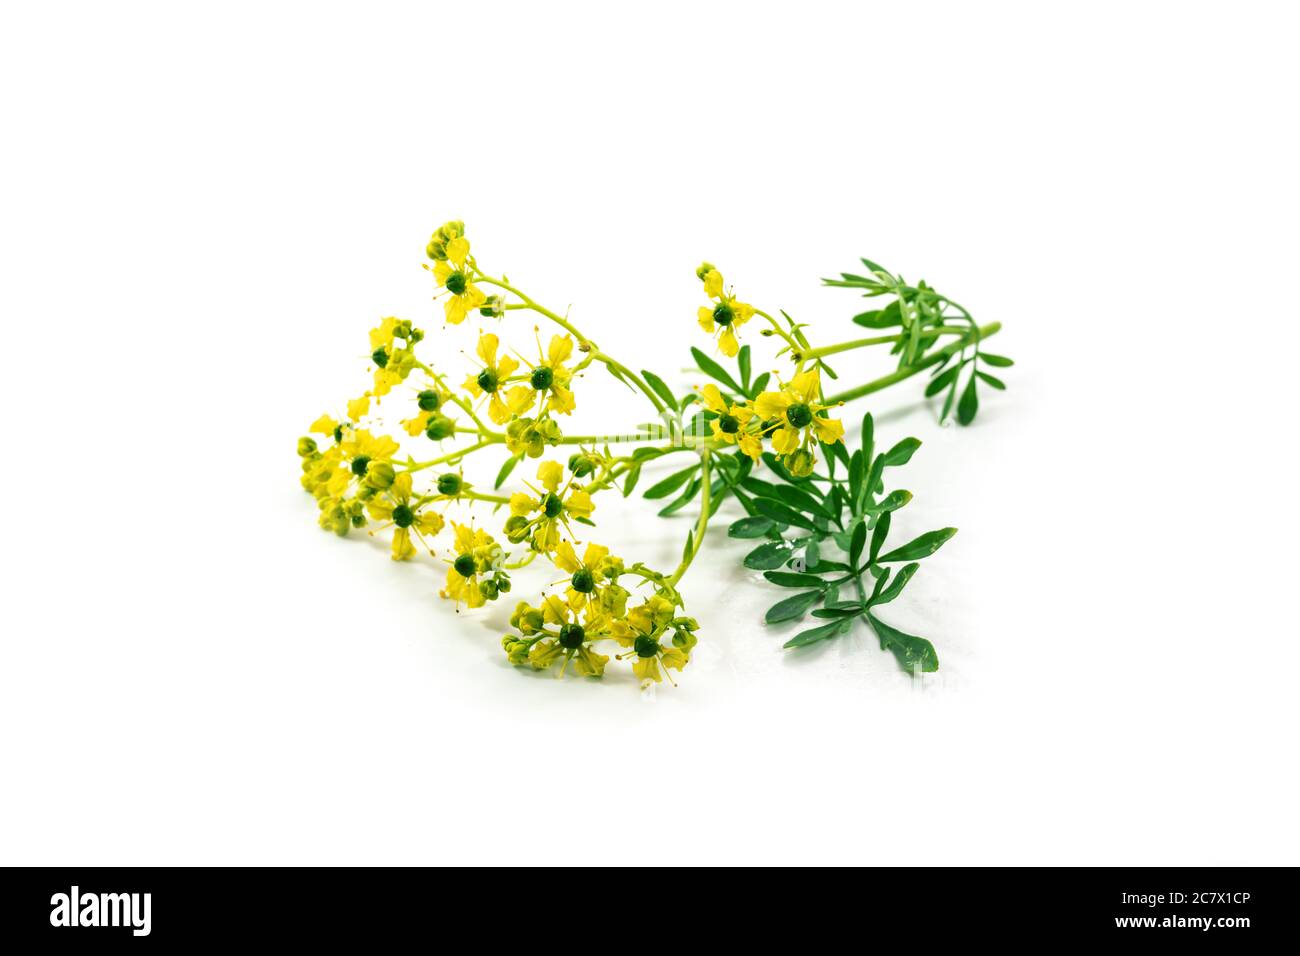 Fleurs communes rue ou herbe-de-grâce (Ruta graveolens) avec de petites fleurs jaunes, herbes aromatiques et plante médicinale depuis les temps anciens, isolé avec Banque D'Images